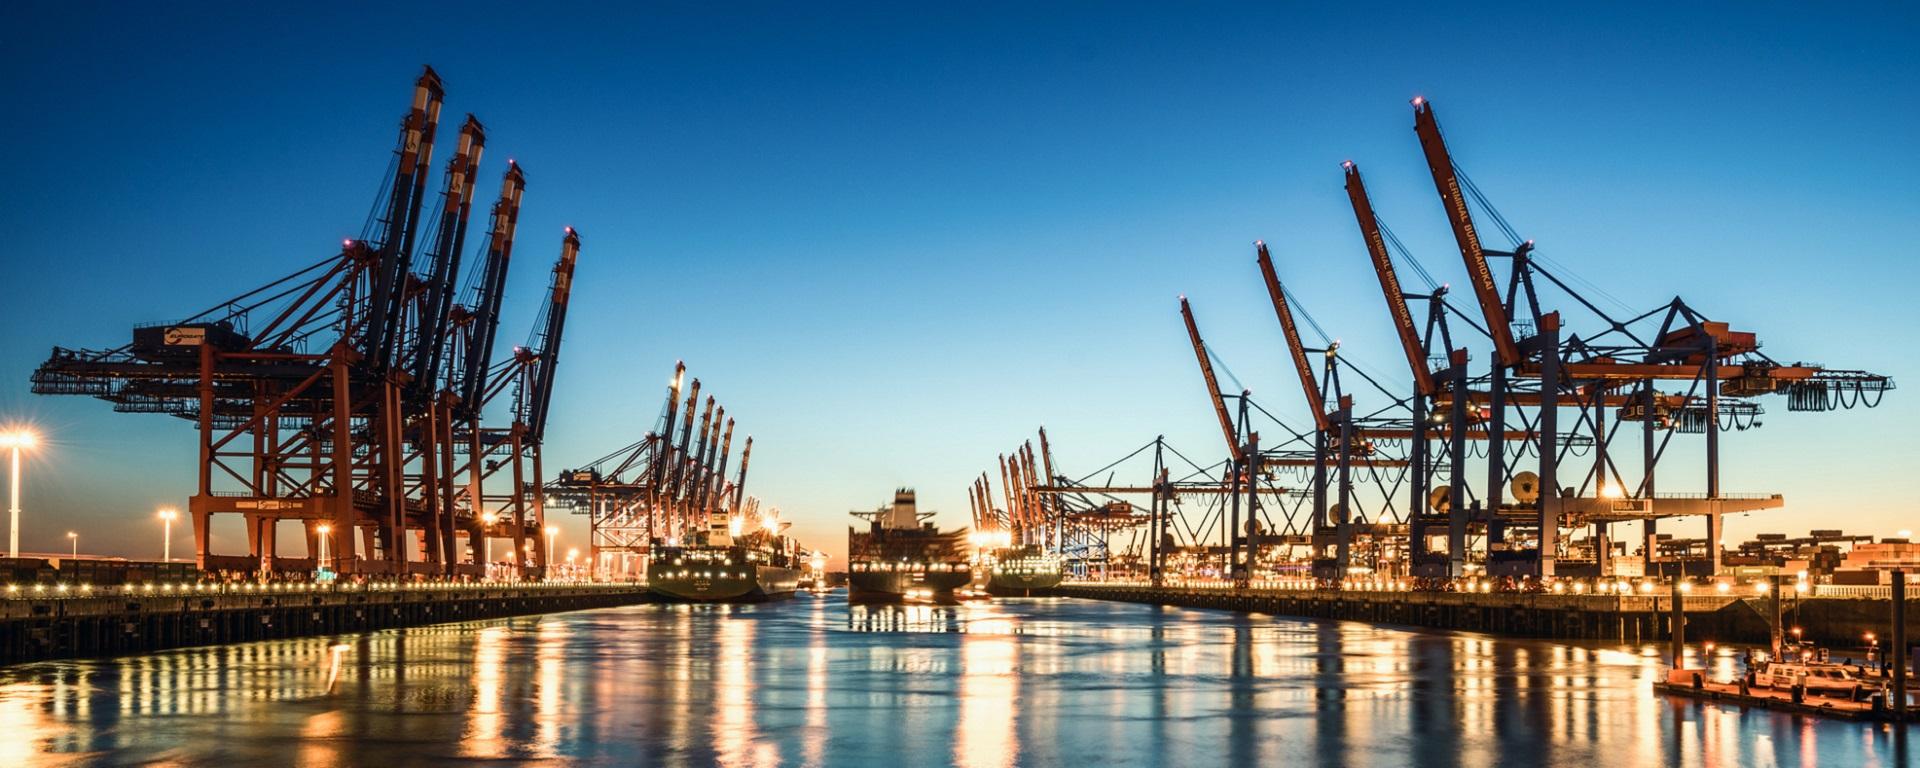 Der Hamburger Containerhafen ist der drittgrößte Containerhafen Europas. (Quelle: Adobe Stock / davis)